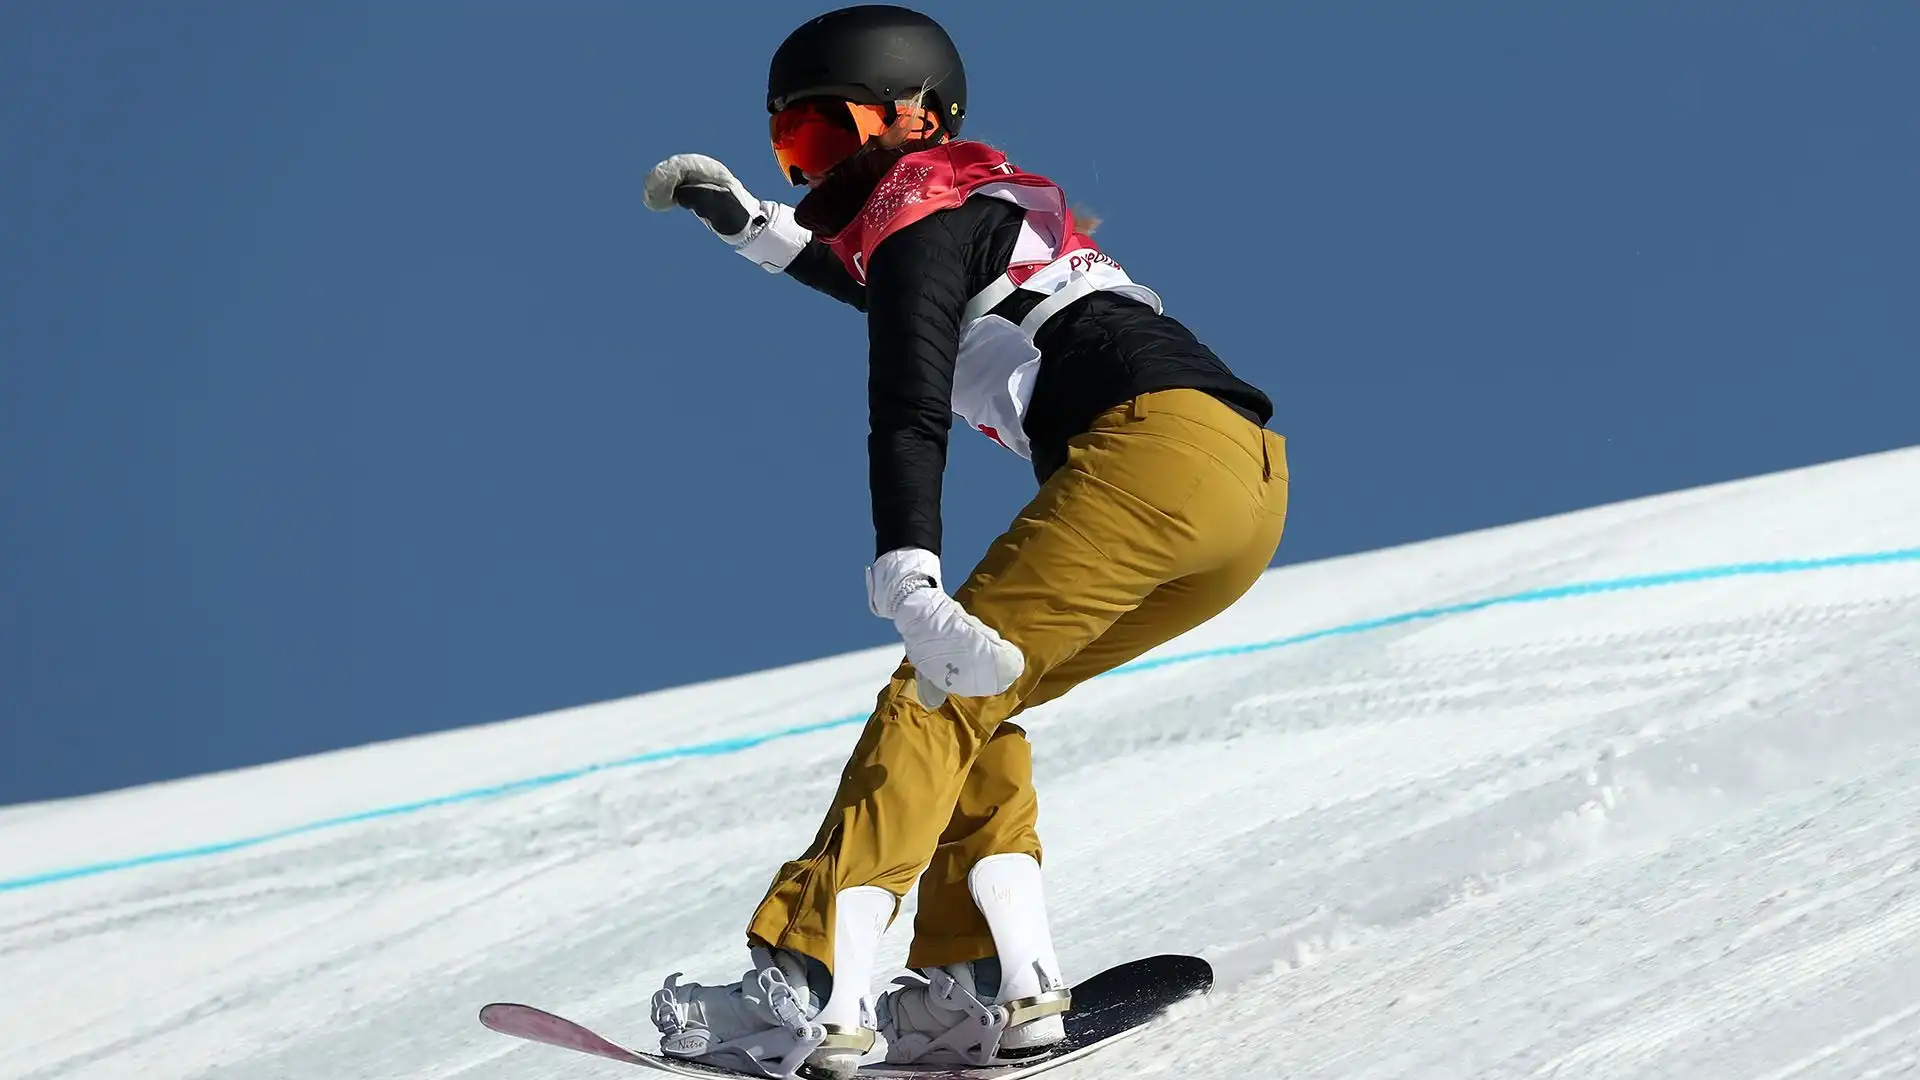 Ha partecipato a due edizioni delle Olimpiadi, Soci 2014 (11ª nello slopestyle) e Pyeongchang 2018 (4ª nello slopestyle e 6ª nel big air), e a due dei Campionati mondiali vincendo complessivamente due medaglie.